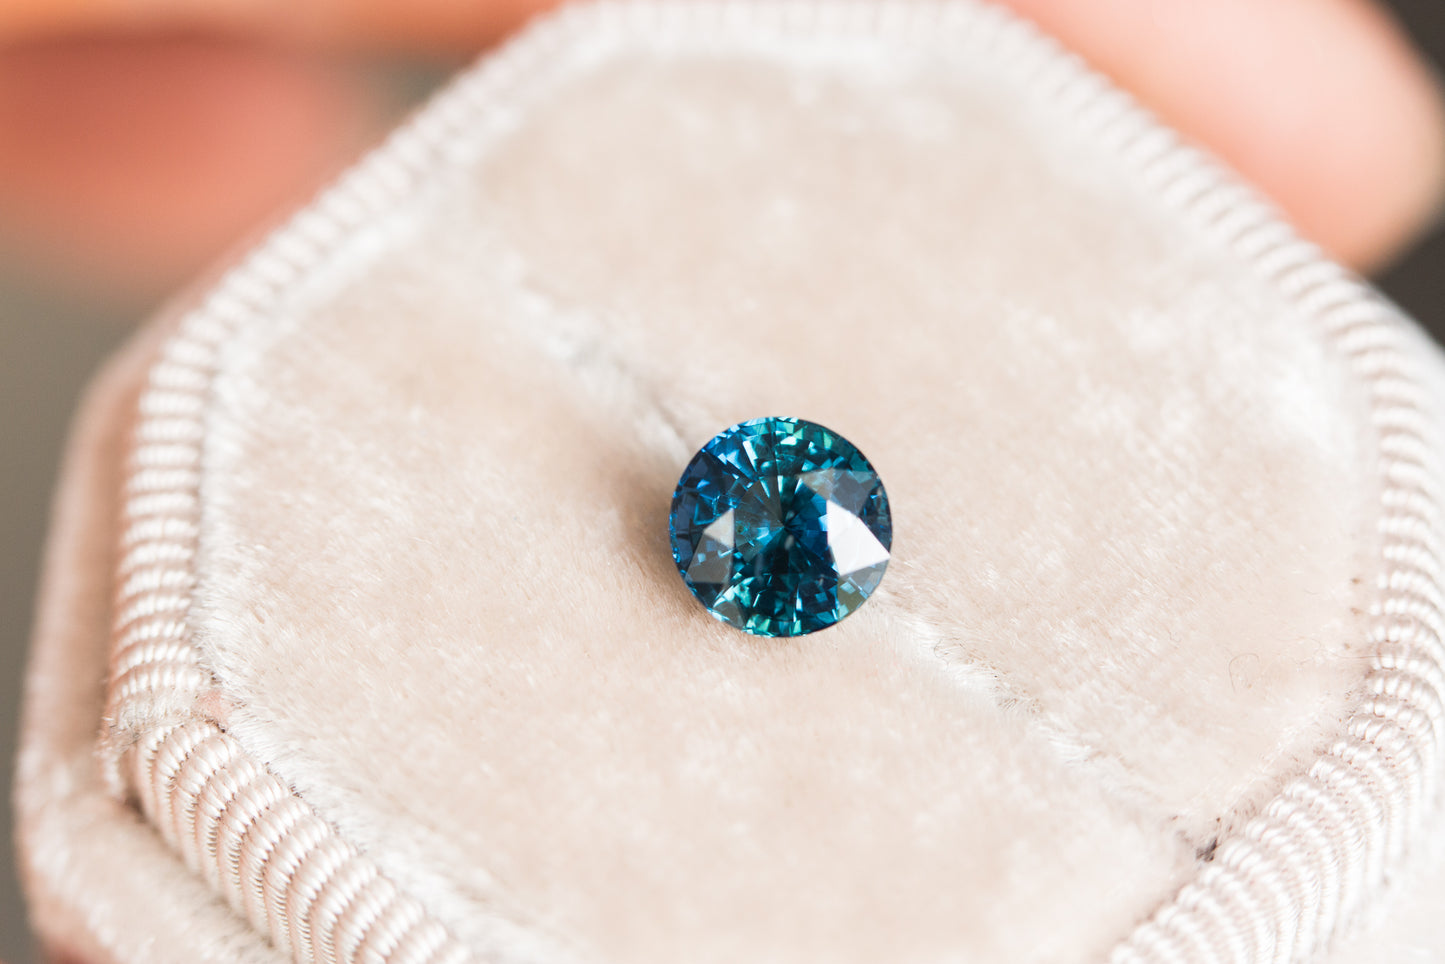 1.8ct round blue green sapphire